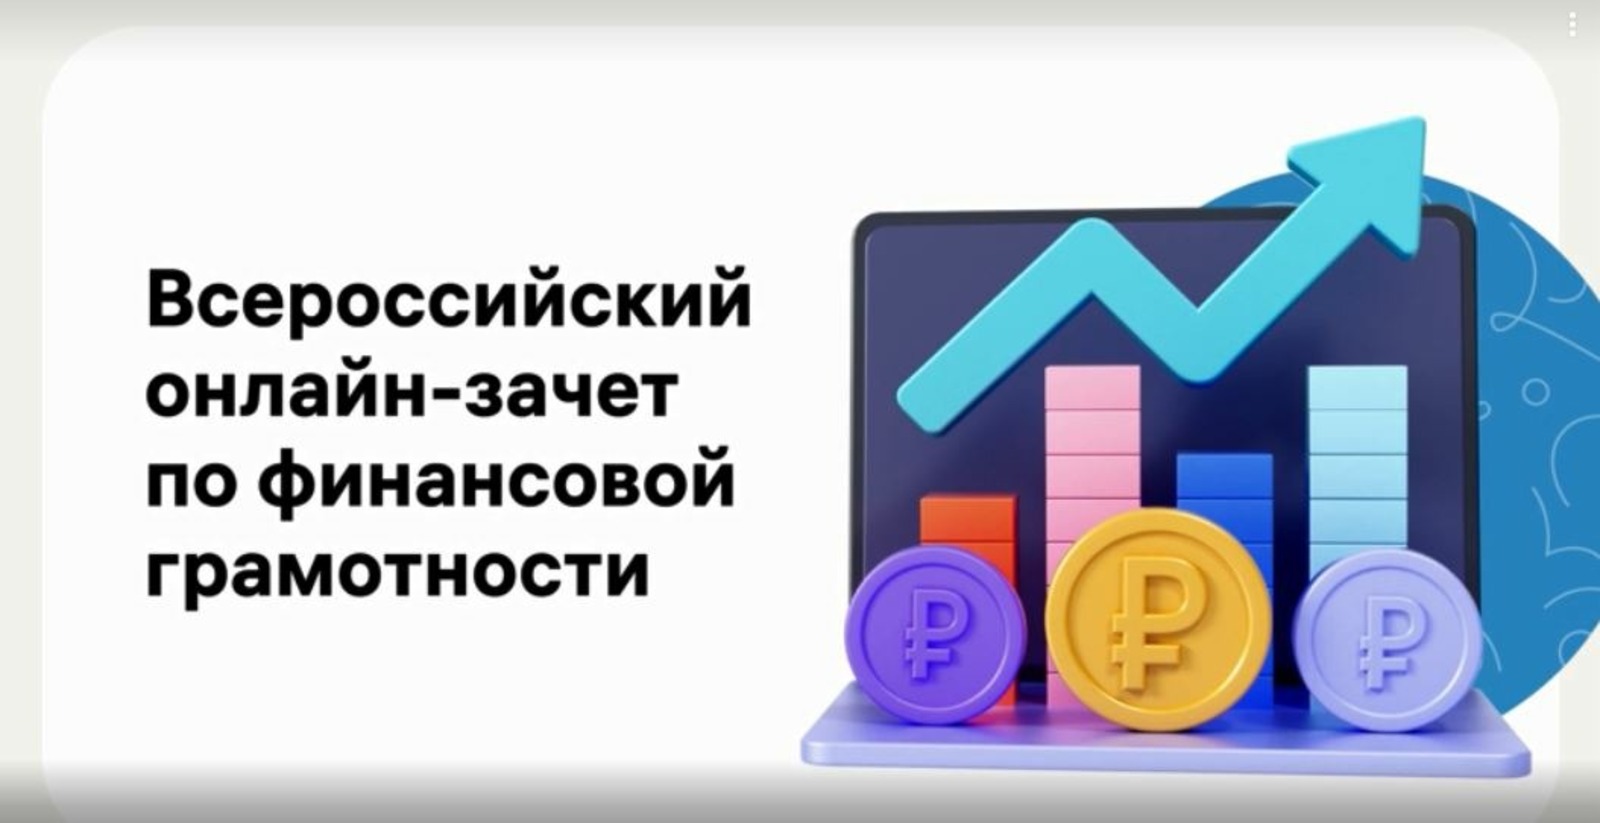 С 30 ноября по 16 декабря 2021 года в Башкортостане пройдет онлайн-зачет по финансовой грамотности